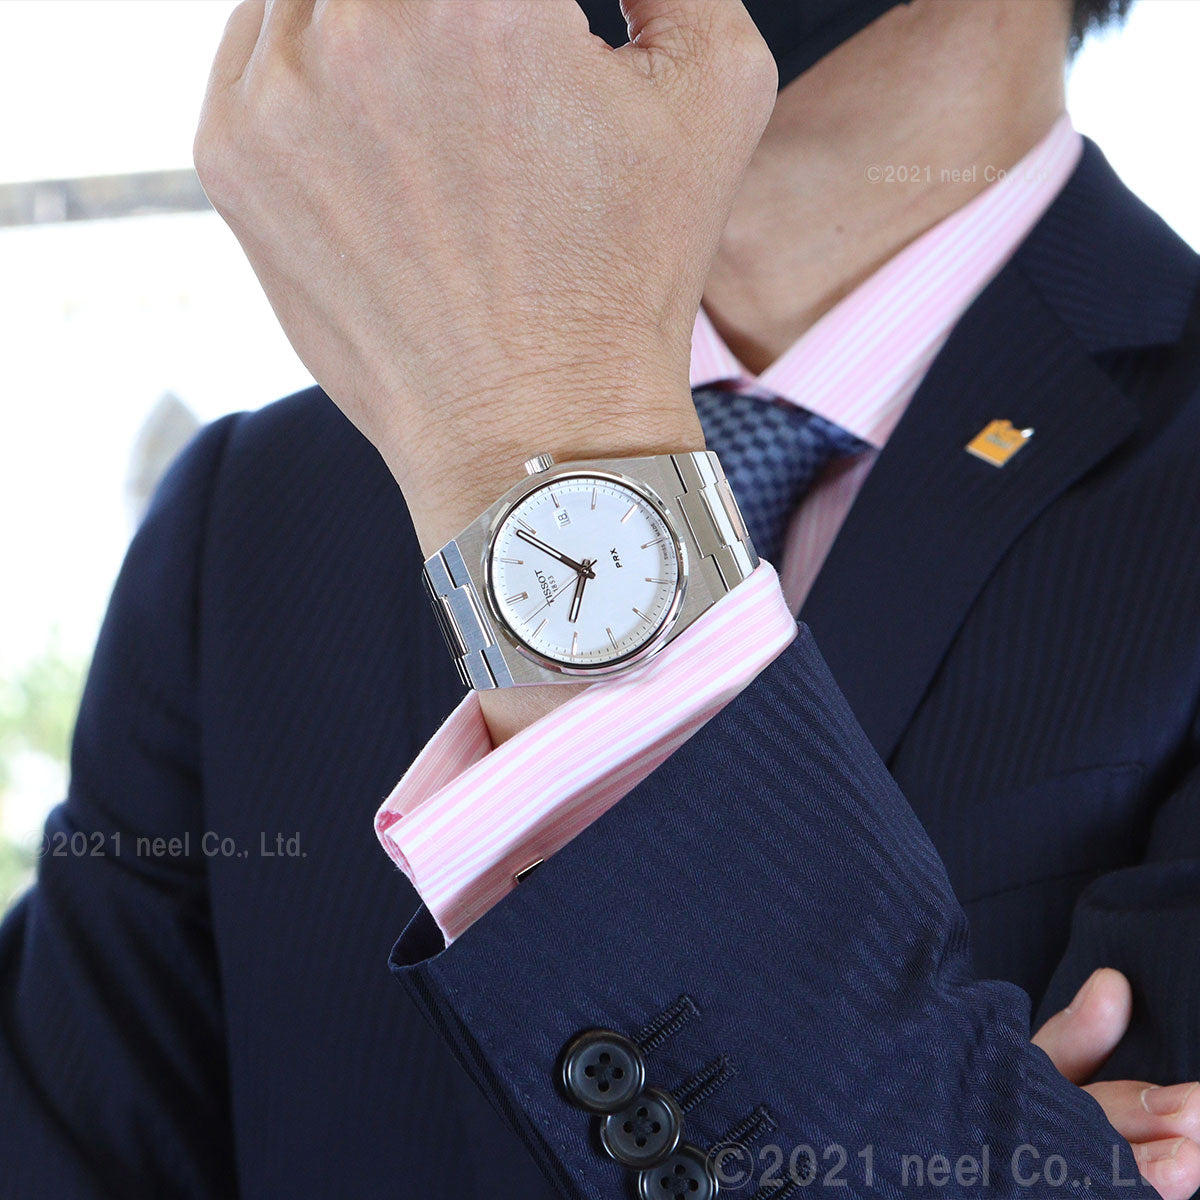 ティソ TISSOT 腕時計 メンズ PRX ピーアールエックス T137.410.11.031.00